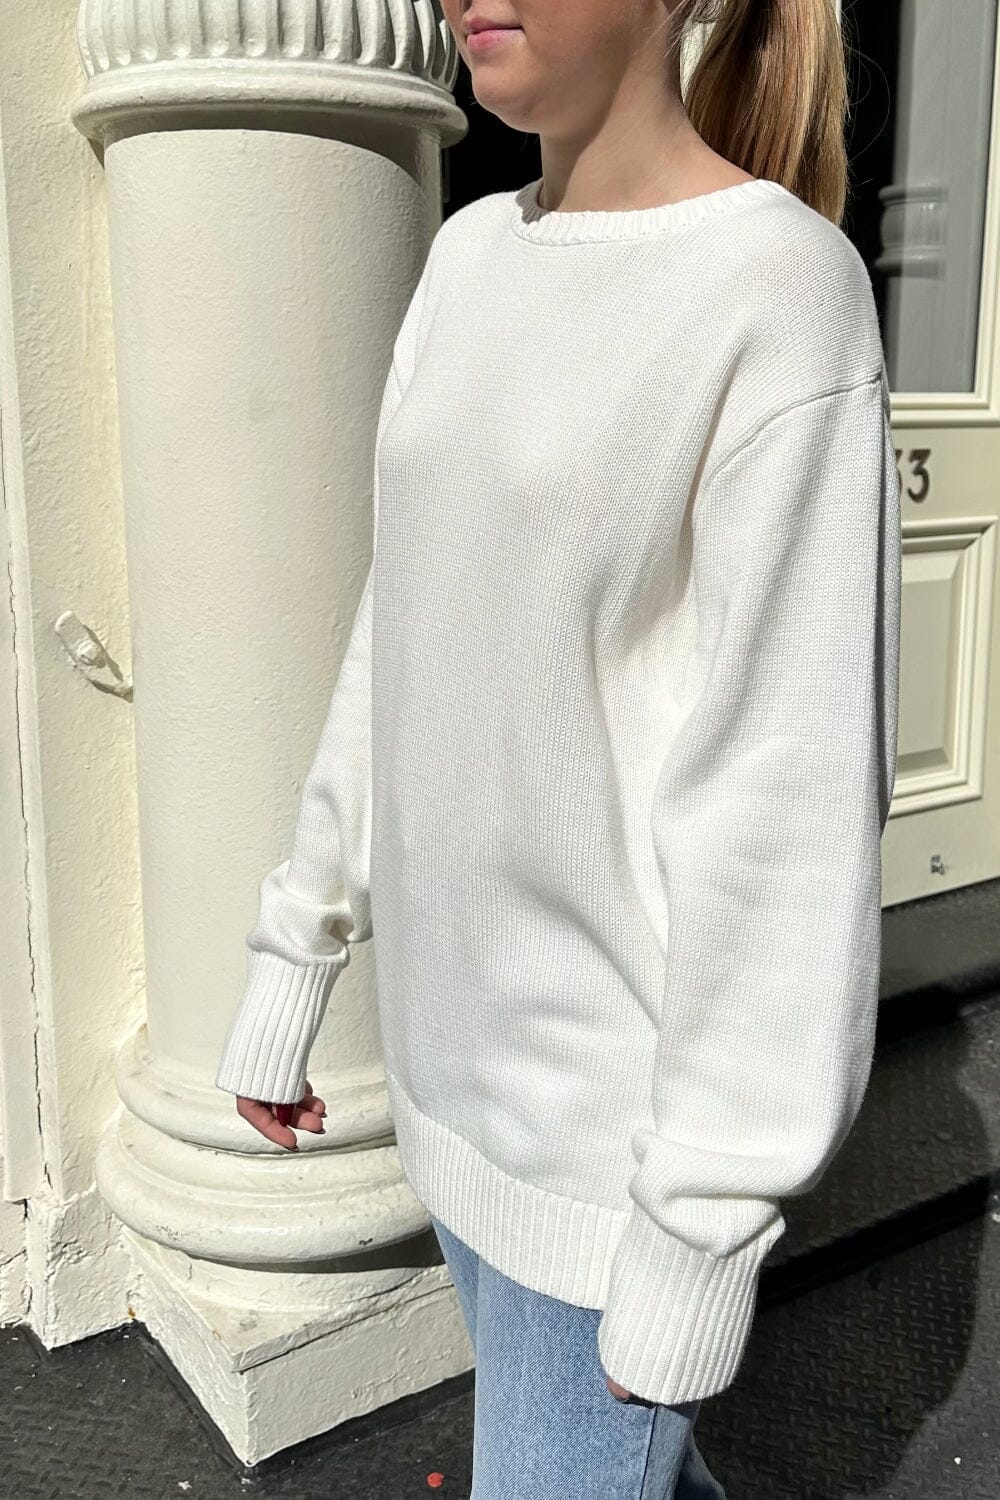 Brandy Melville - Red Brandy Melville Brianna Sweater on Designer Wardrobe